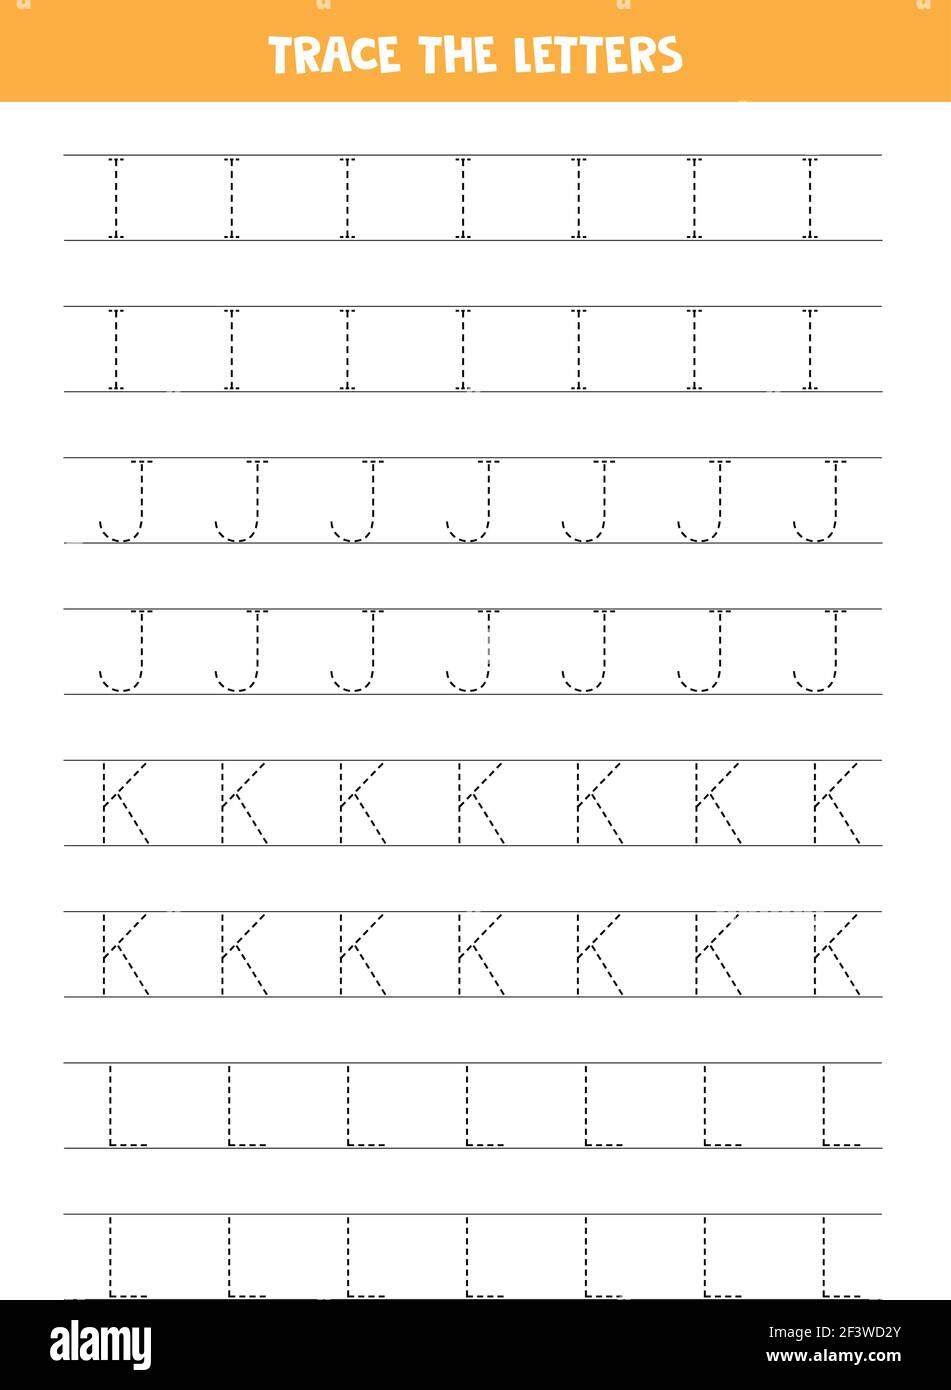 Homeschool Pages Pour Les Enfants: Écrire des Lettres & Objets à Colorier: Apprendre  l'anglais écrit l'alphabet ABC pour les Enfants (Paperback) 